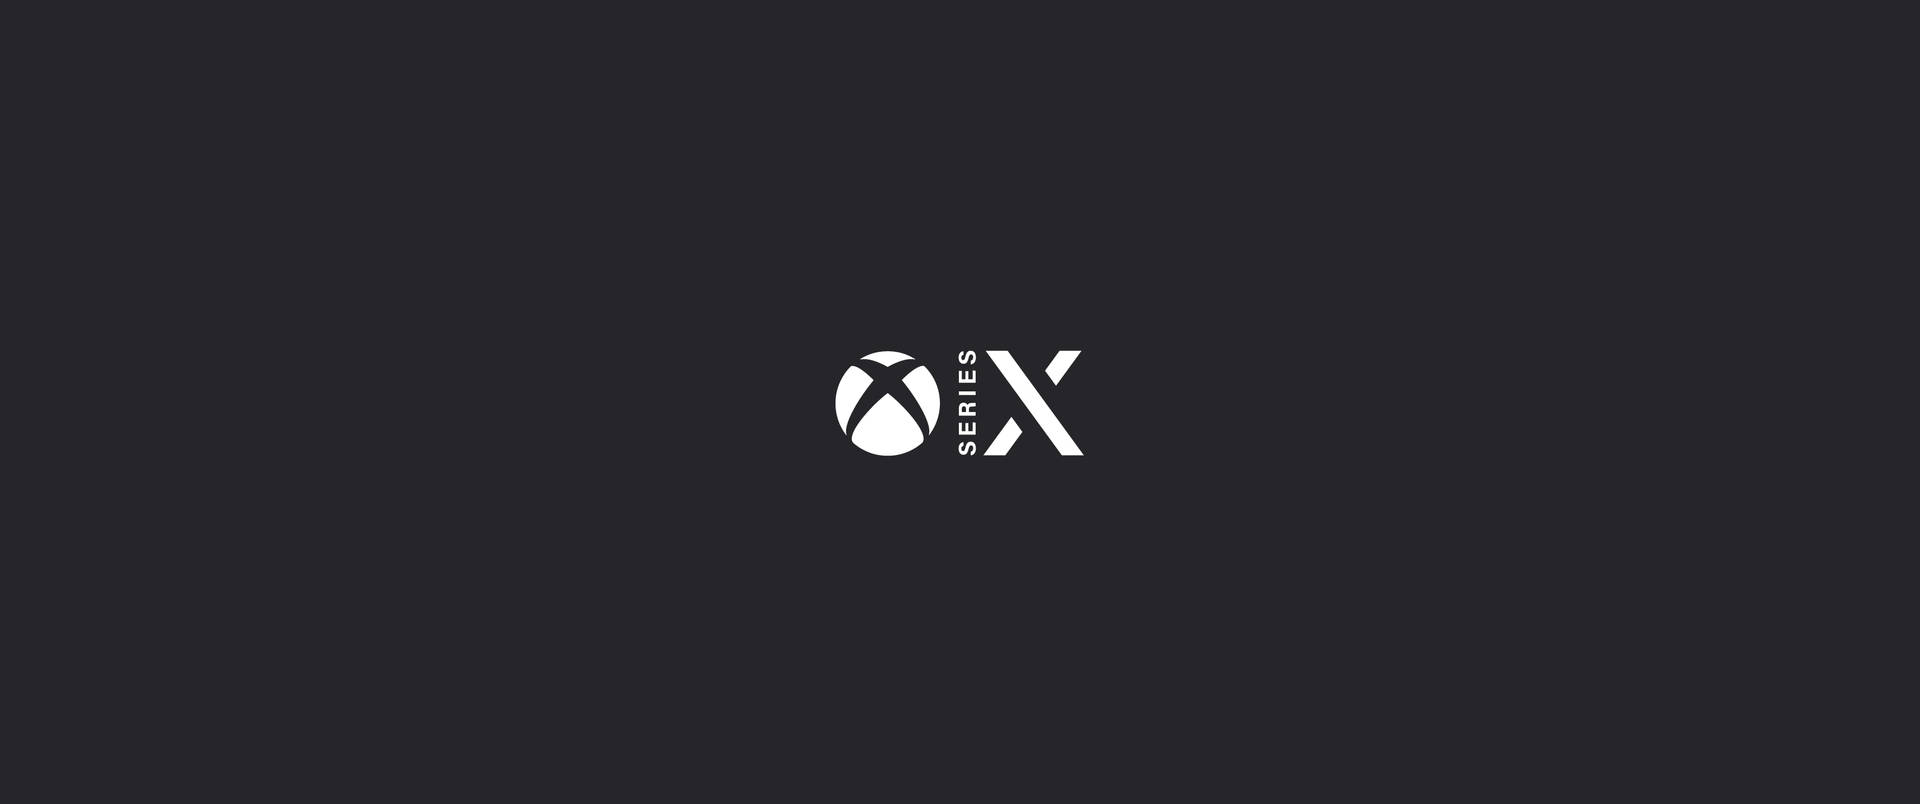 Xbox Series X Minimalist Dark Grey Wallpaper